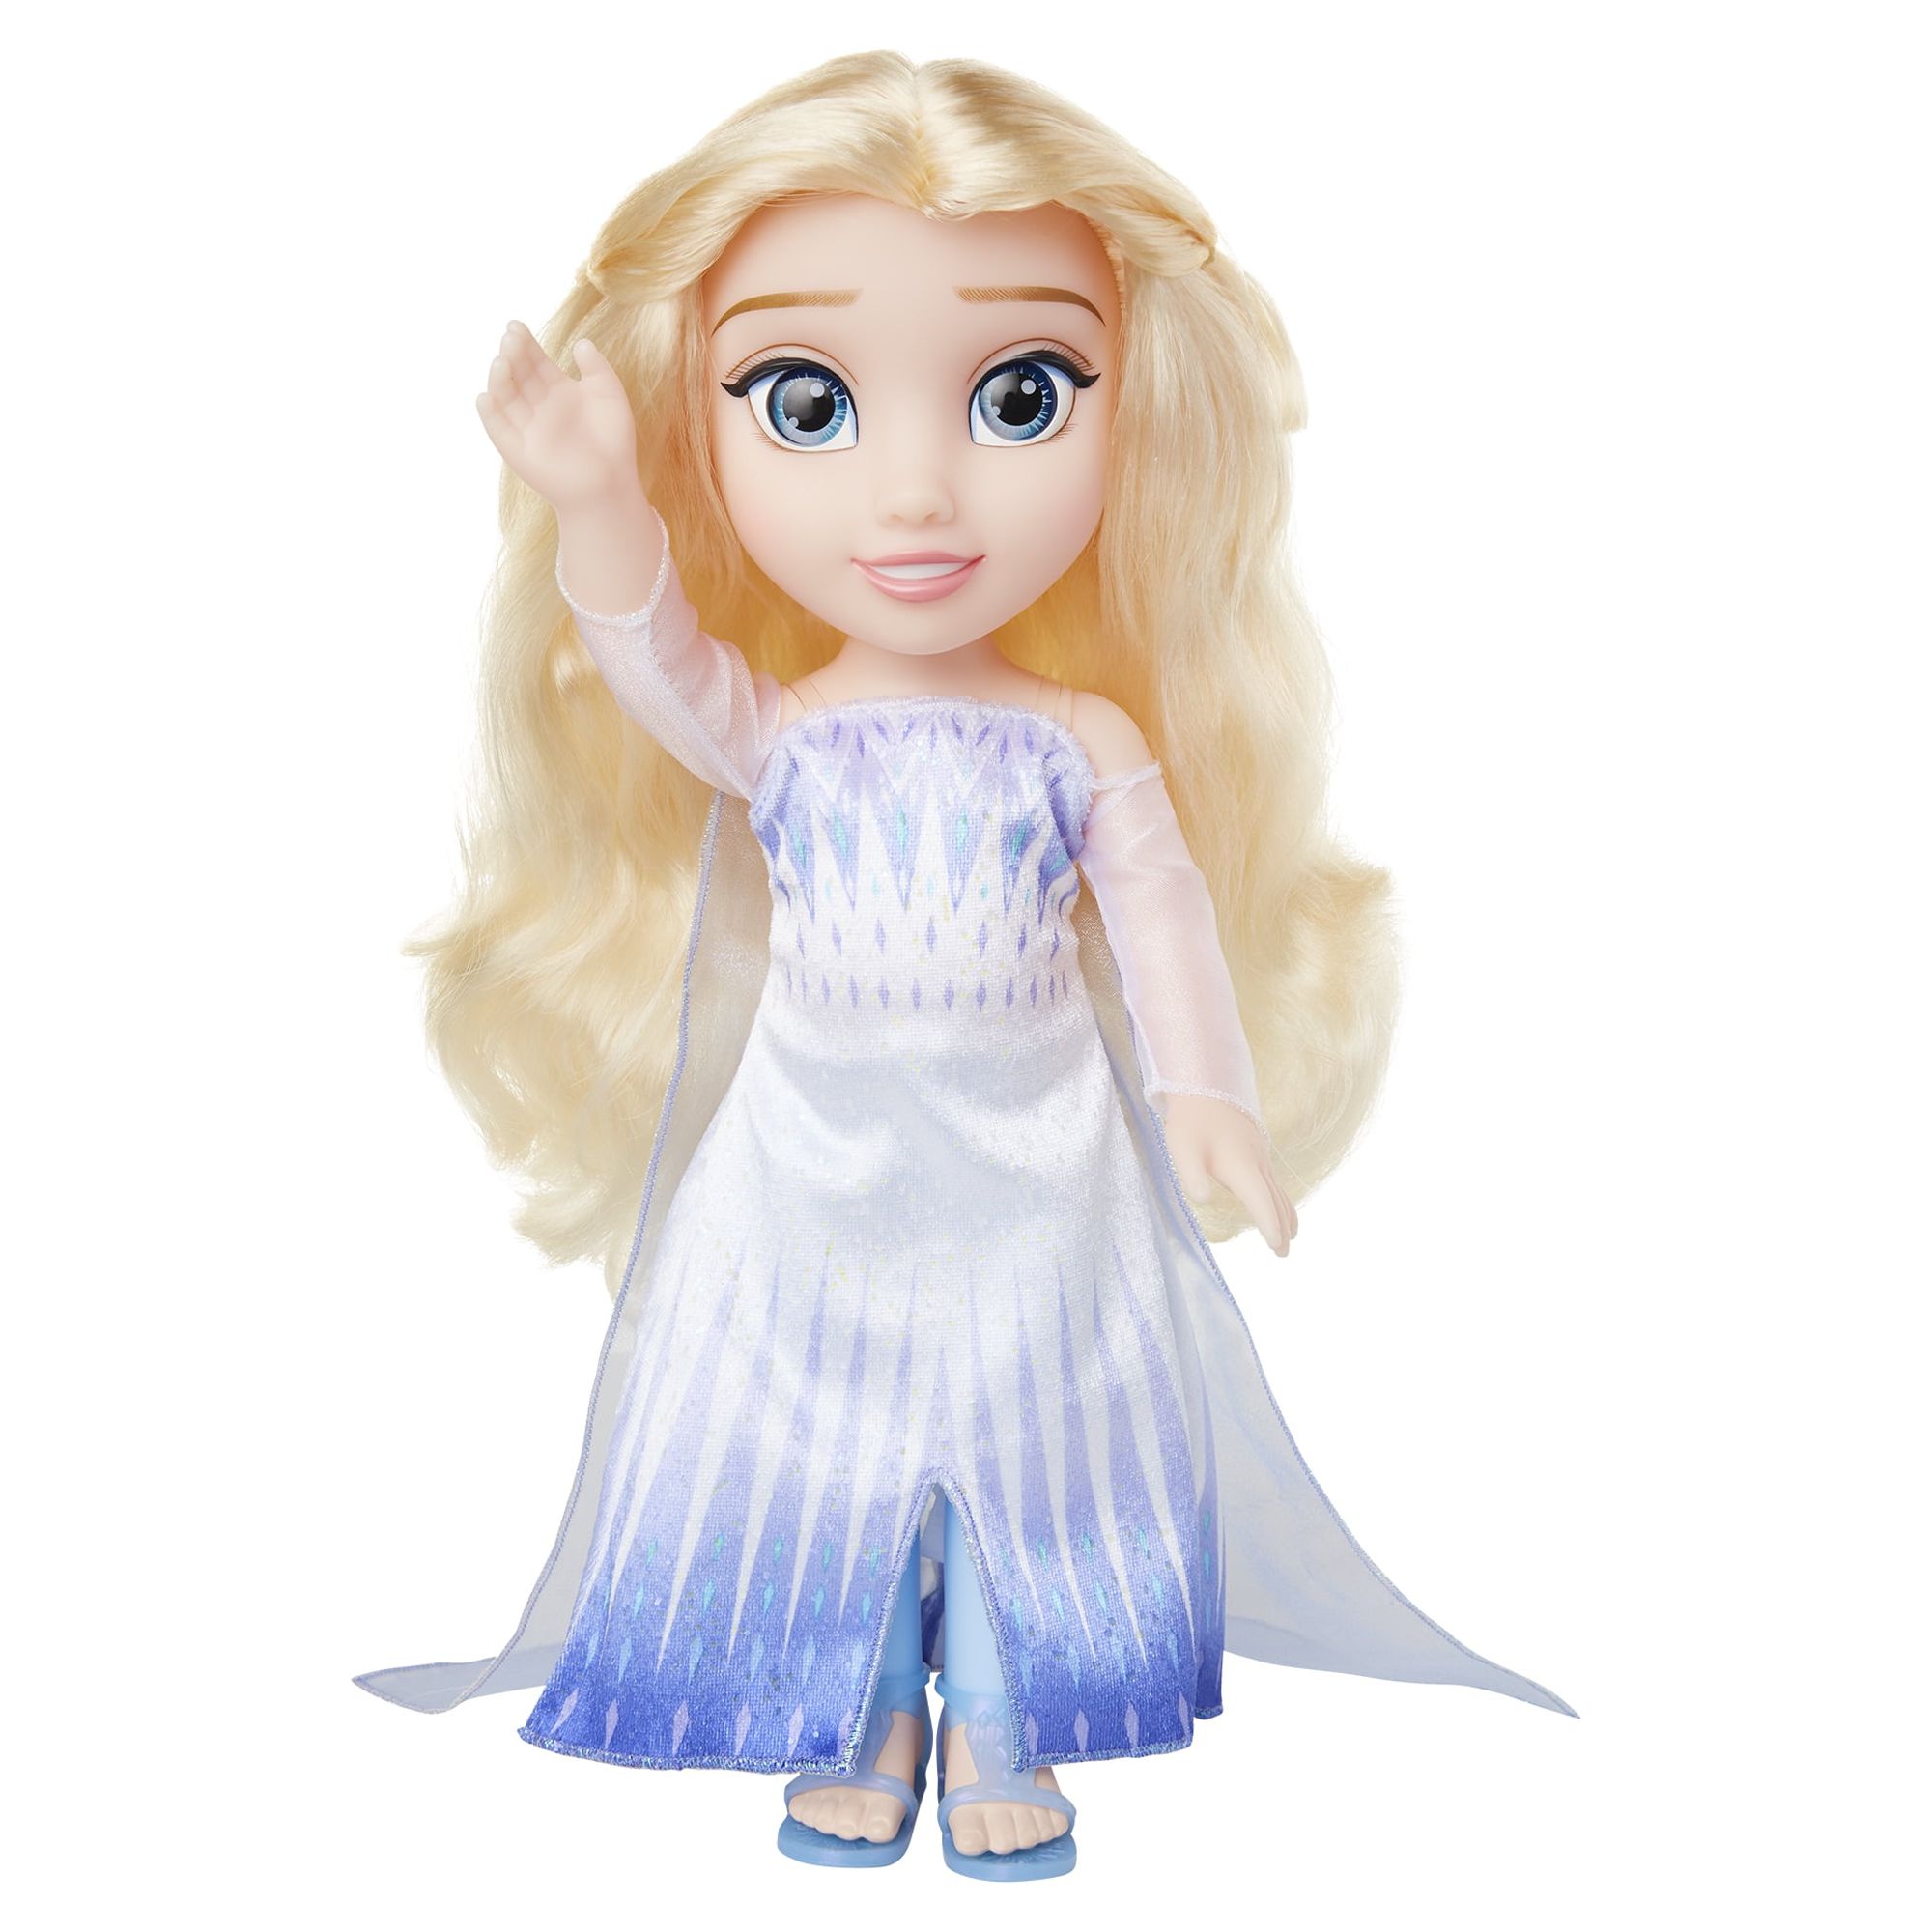 Disney Frozen 2 Elsa the Snow Queen 14" Doll - image 1 of 11